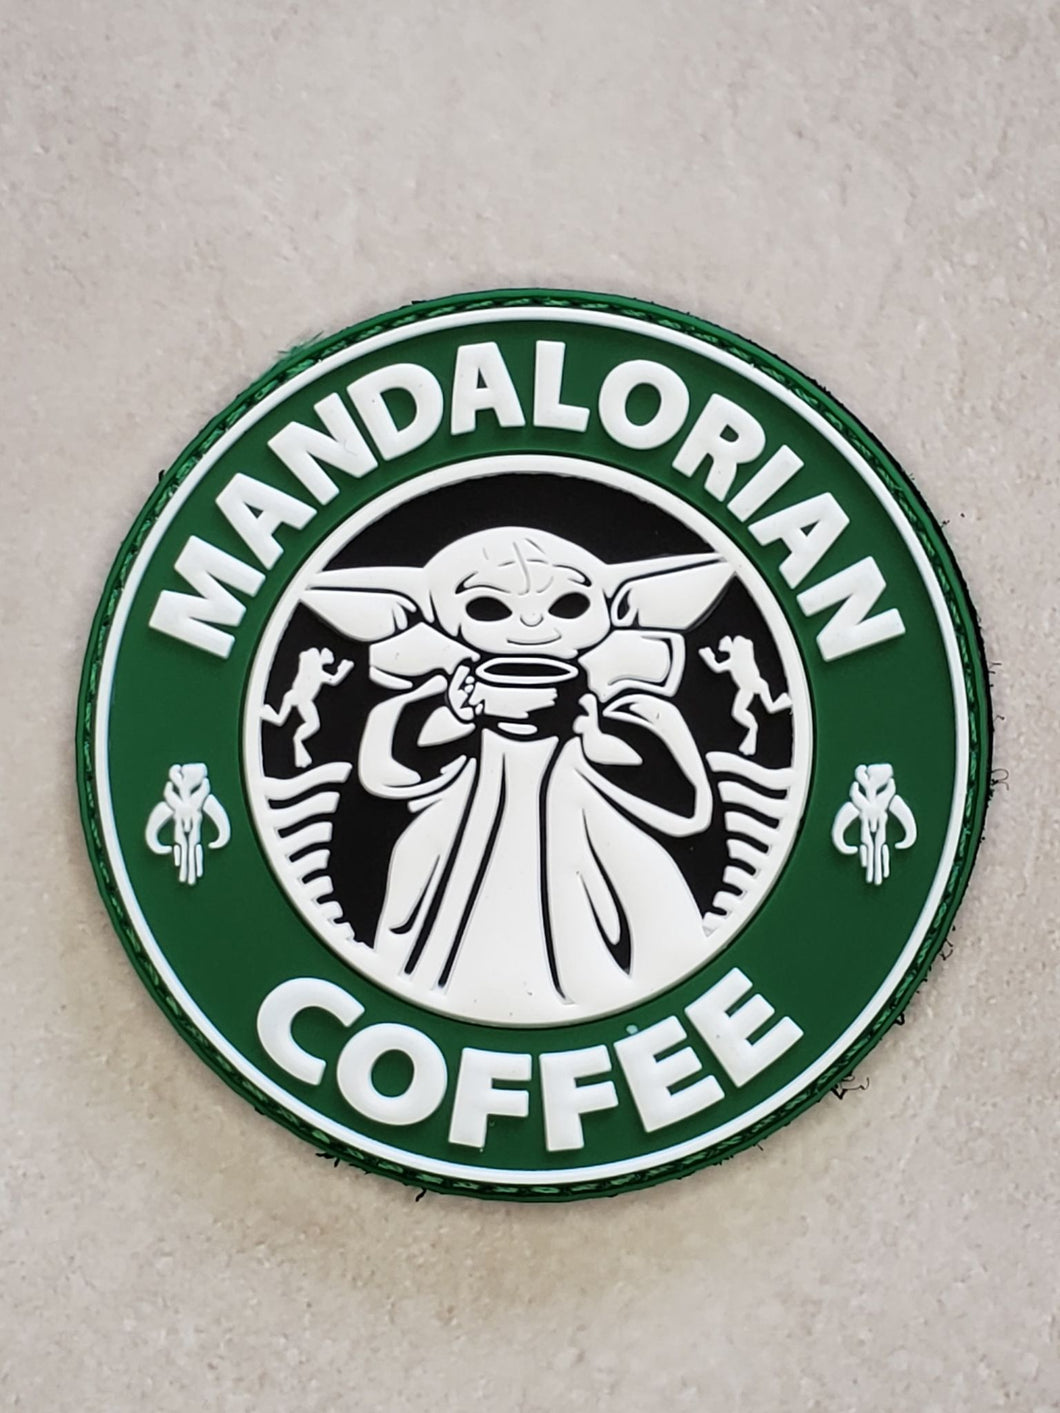 Mandalorian Coffee PVC Morale Patch